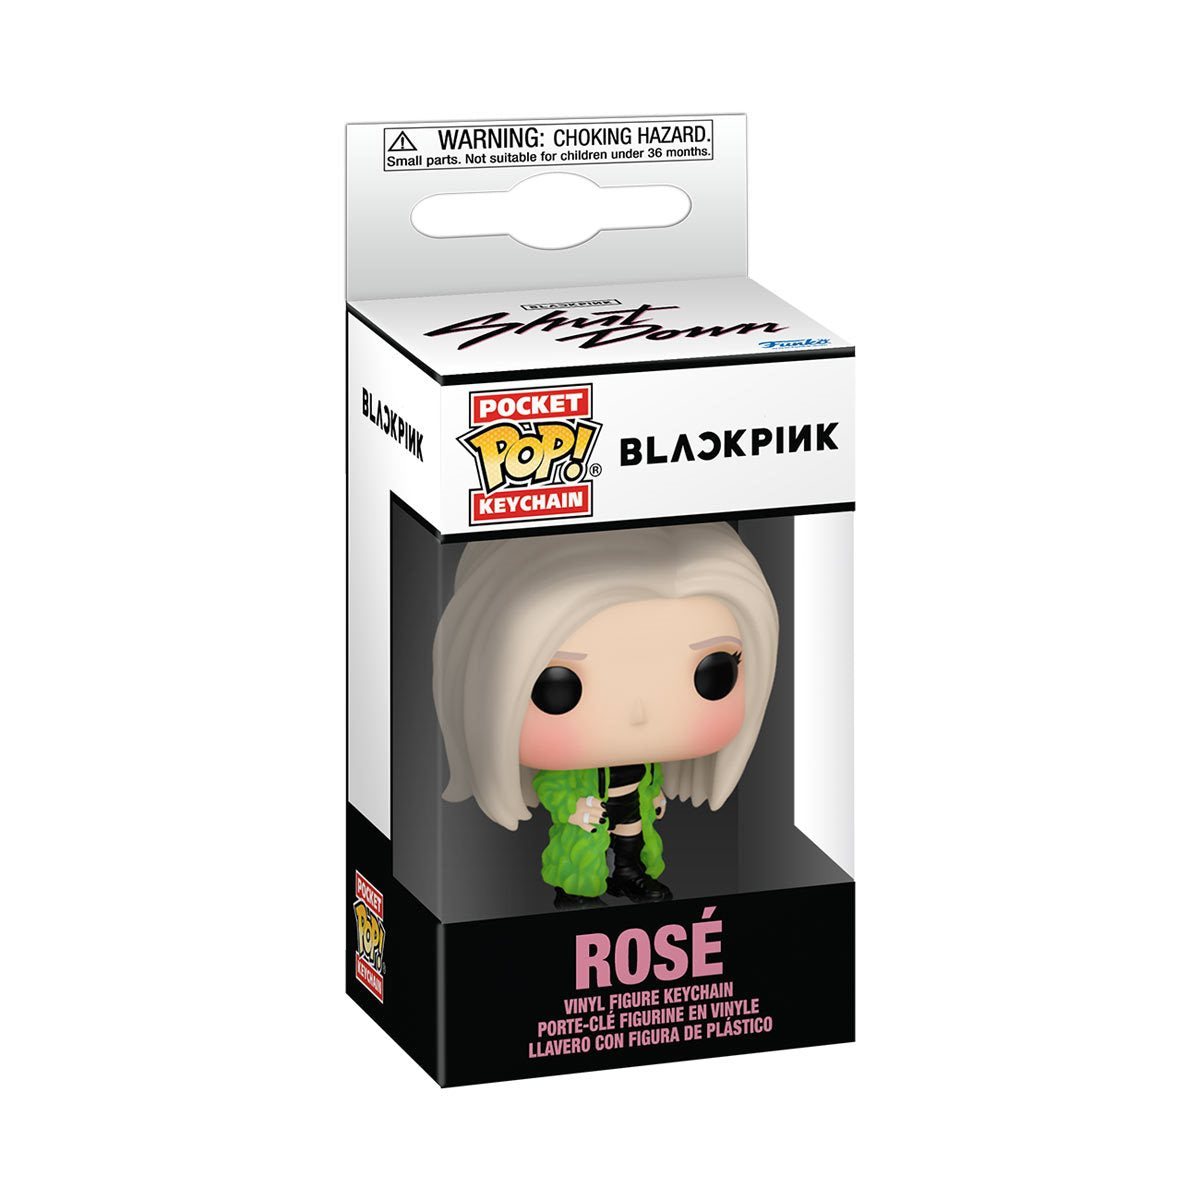 BLACKPINK ROSE POCKET POP! KEY CHAIN